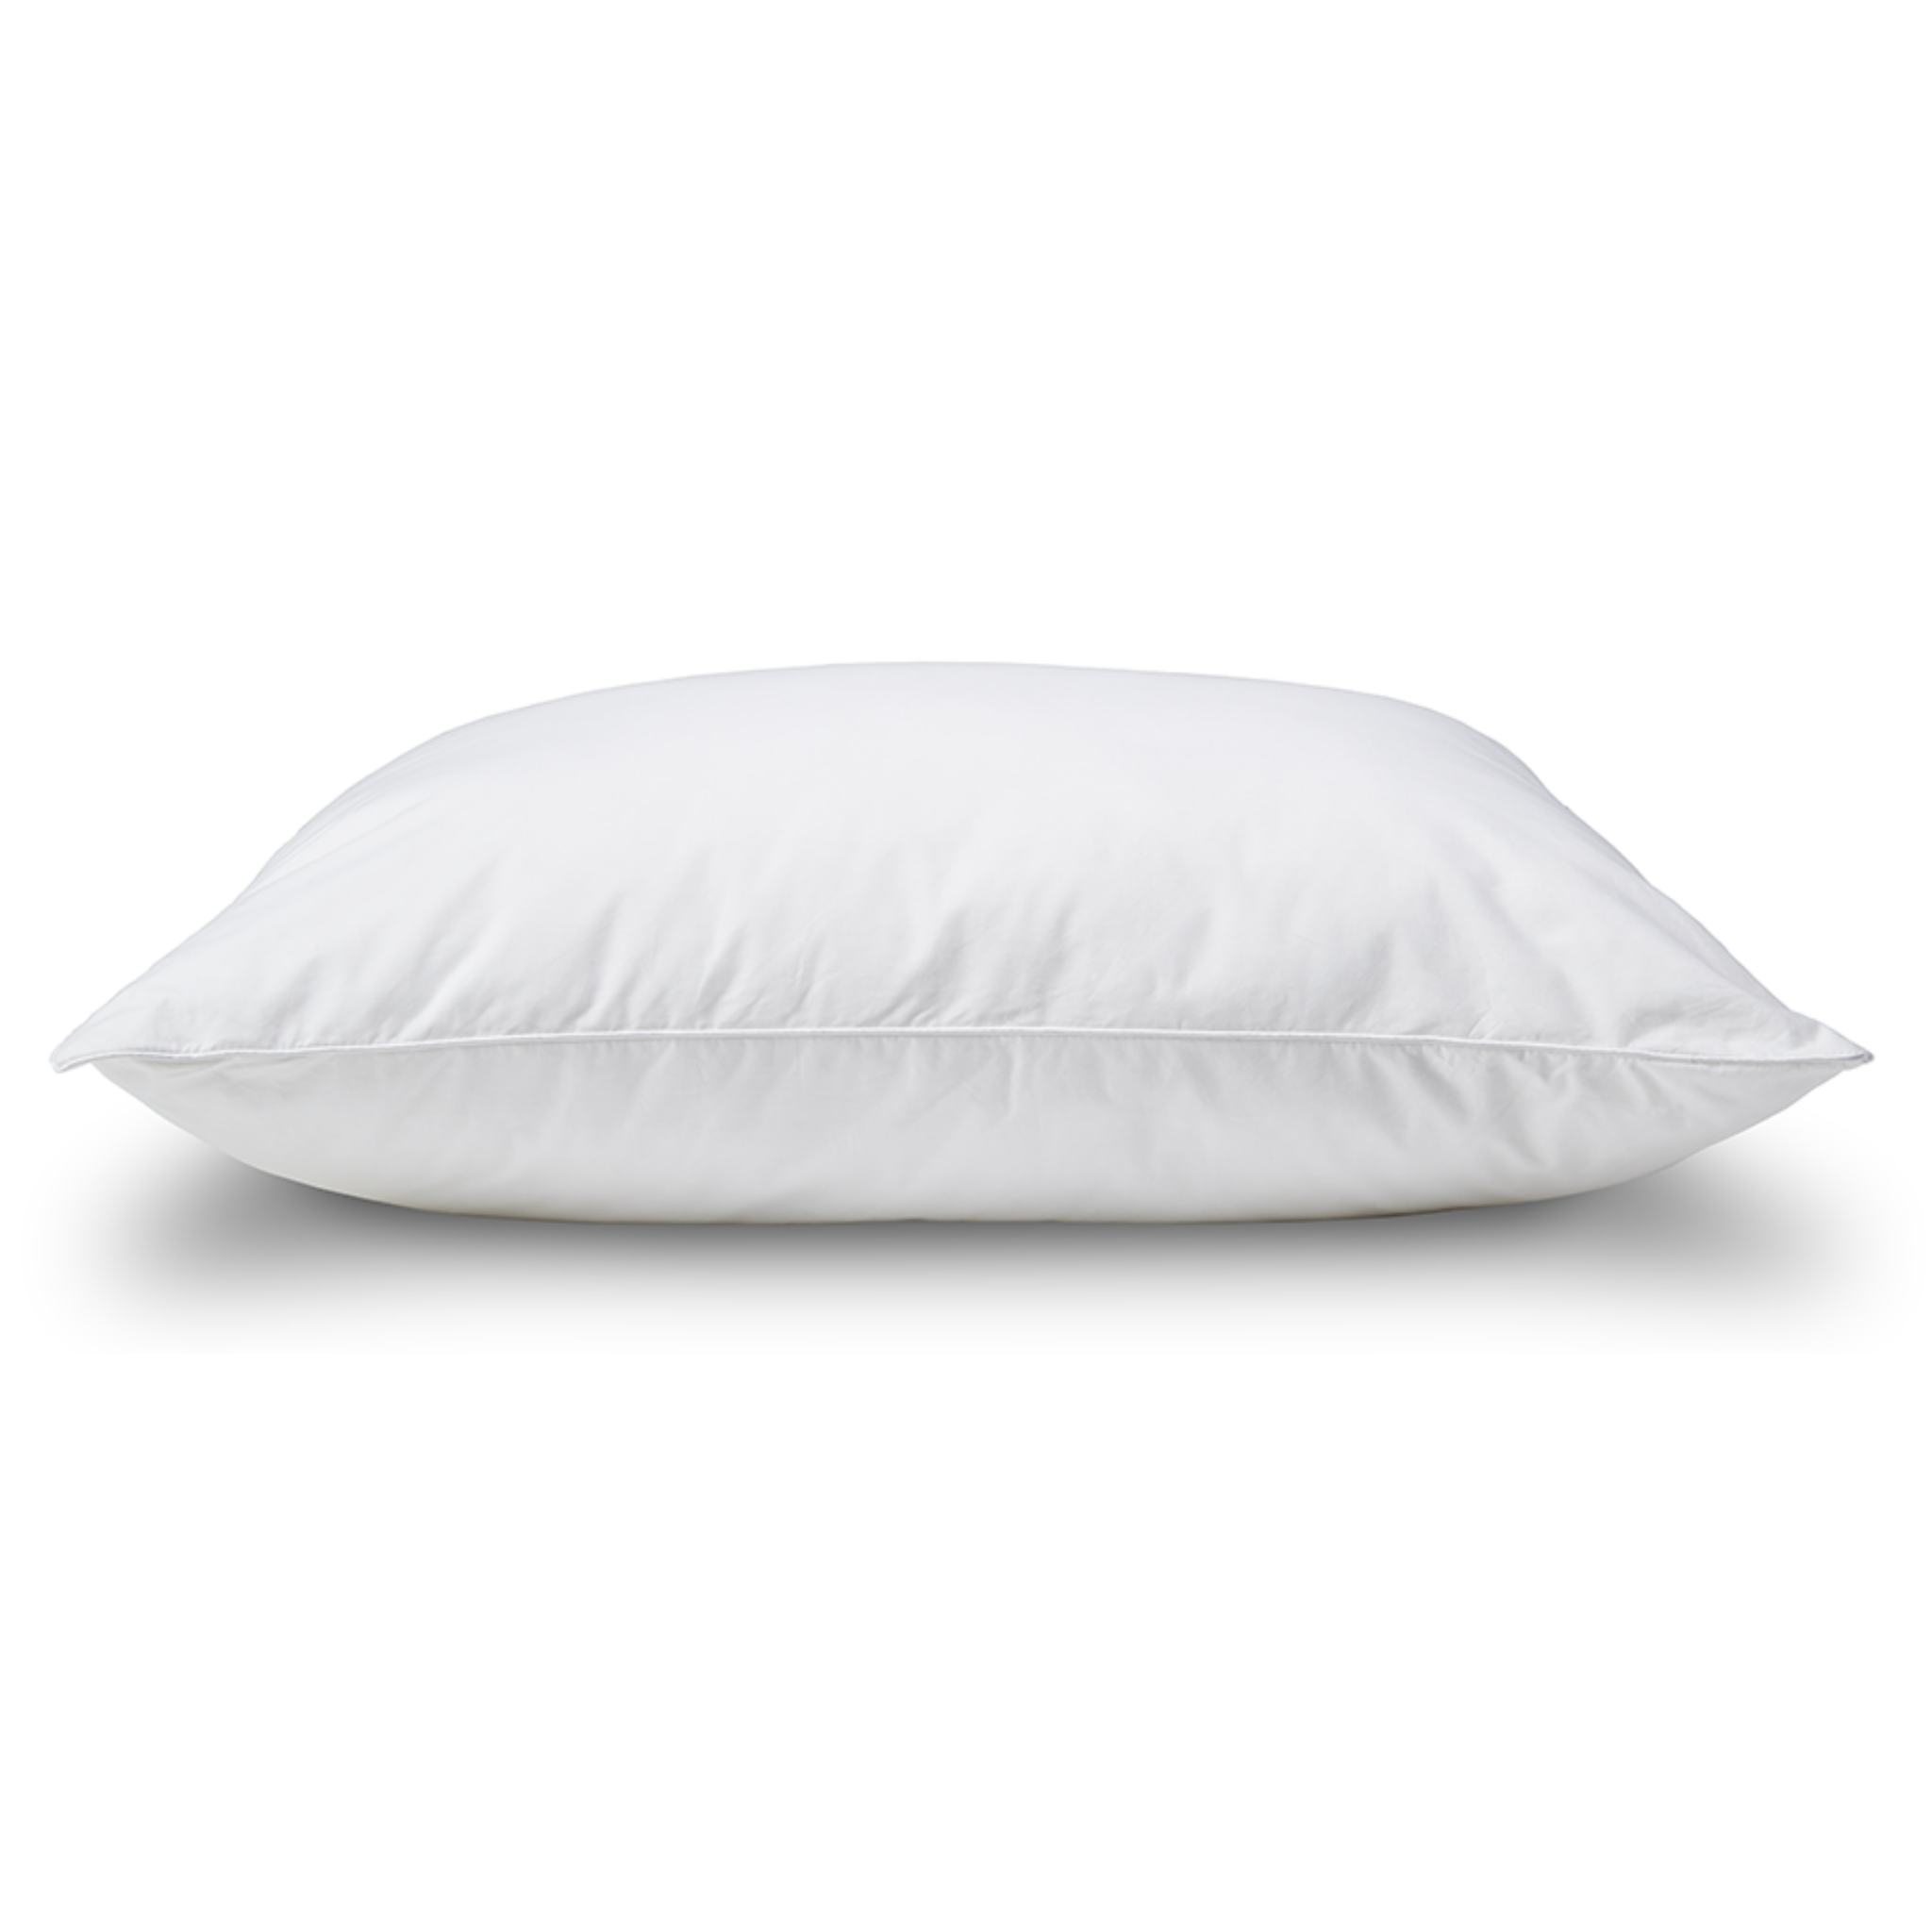 Medium Support Sound Pillow